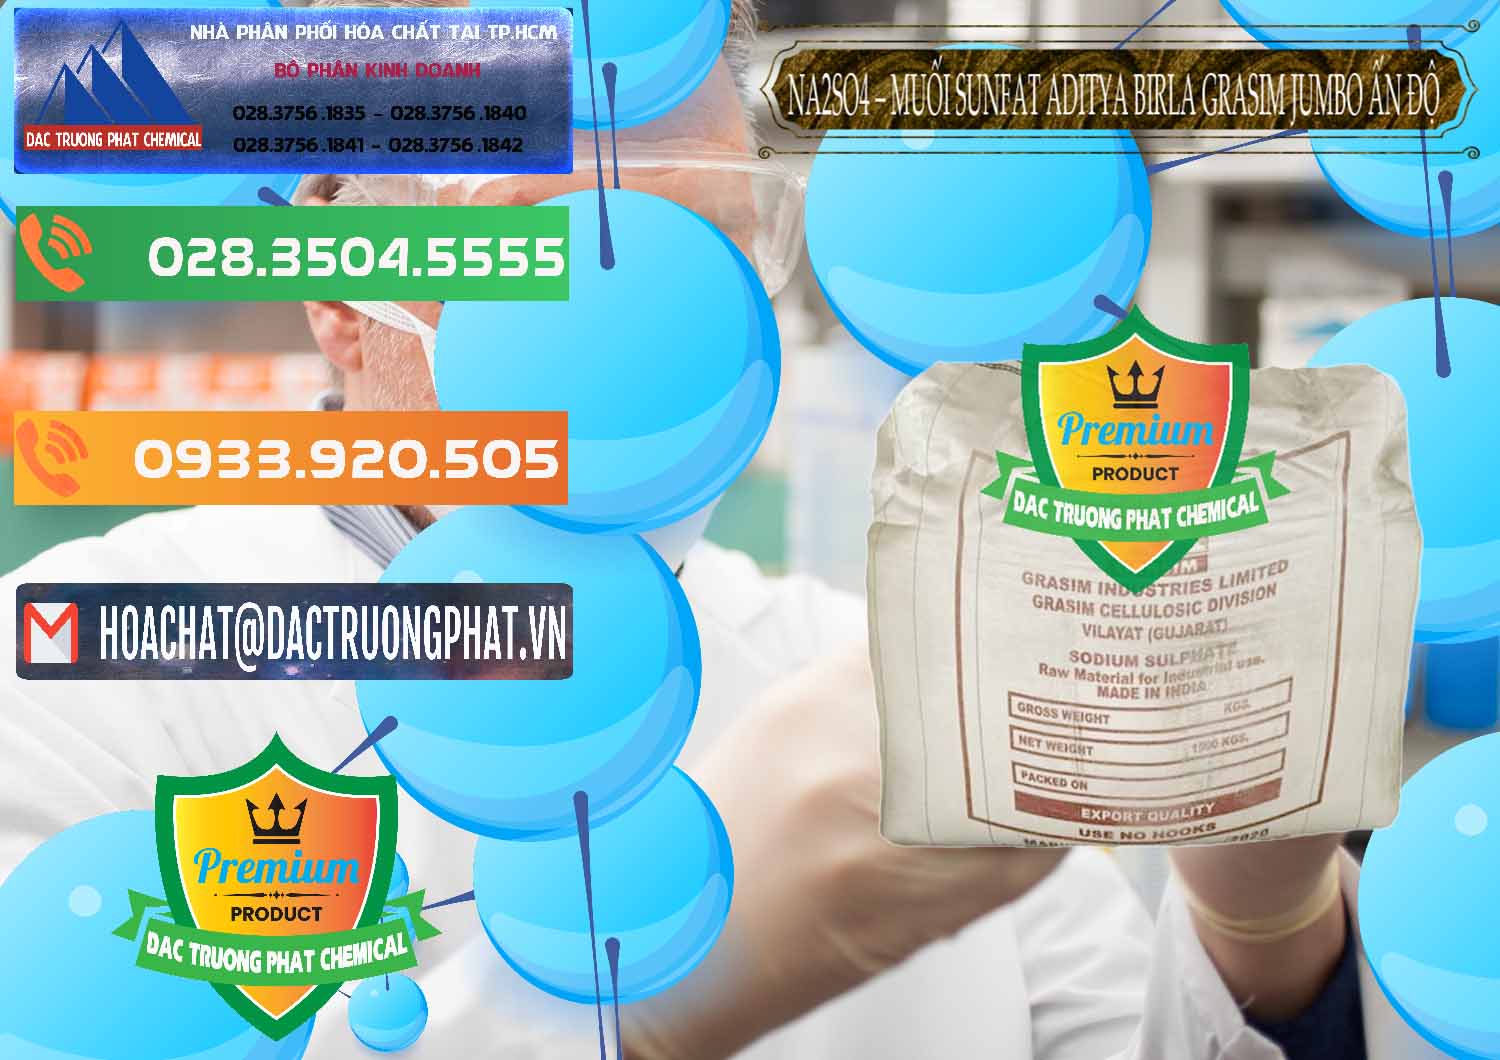 Nơi chuyên cung ứng - bán Sodium Sulphate - Muối Sunfat Na2SO4 Jumbo Bành Aditya Birla Grasim Ấn Độ India - 0357 - Cung cấp - phân phối hóa chất tại TP.HCM - hoachatxulynuoc.com.vn